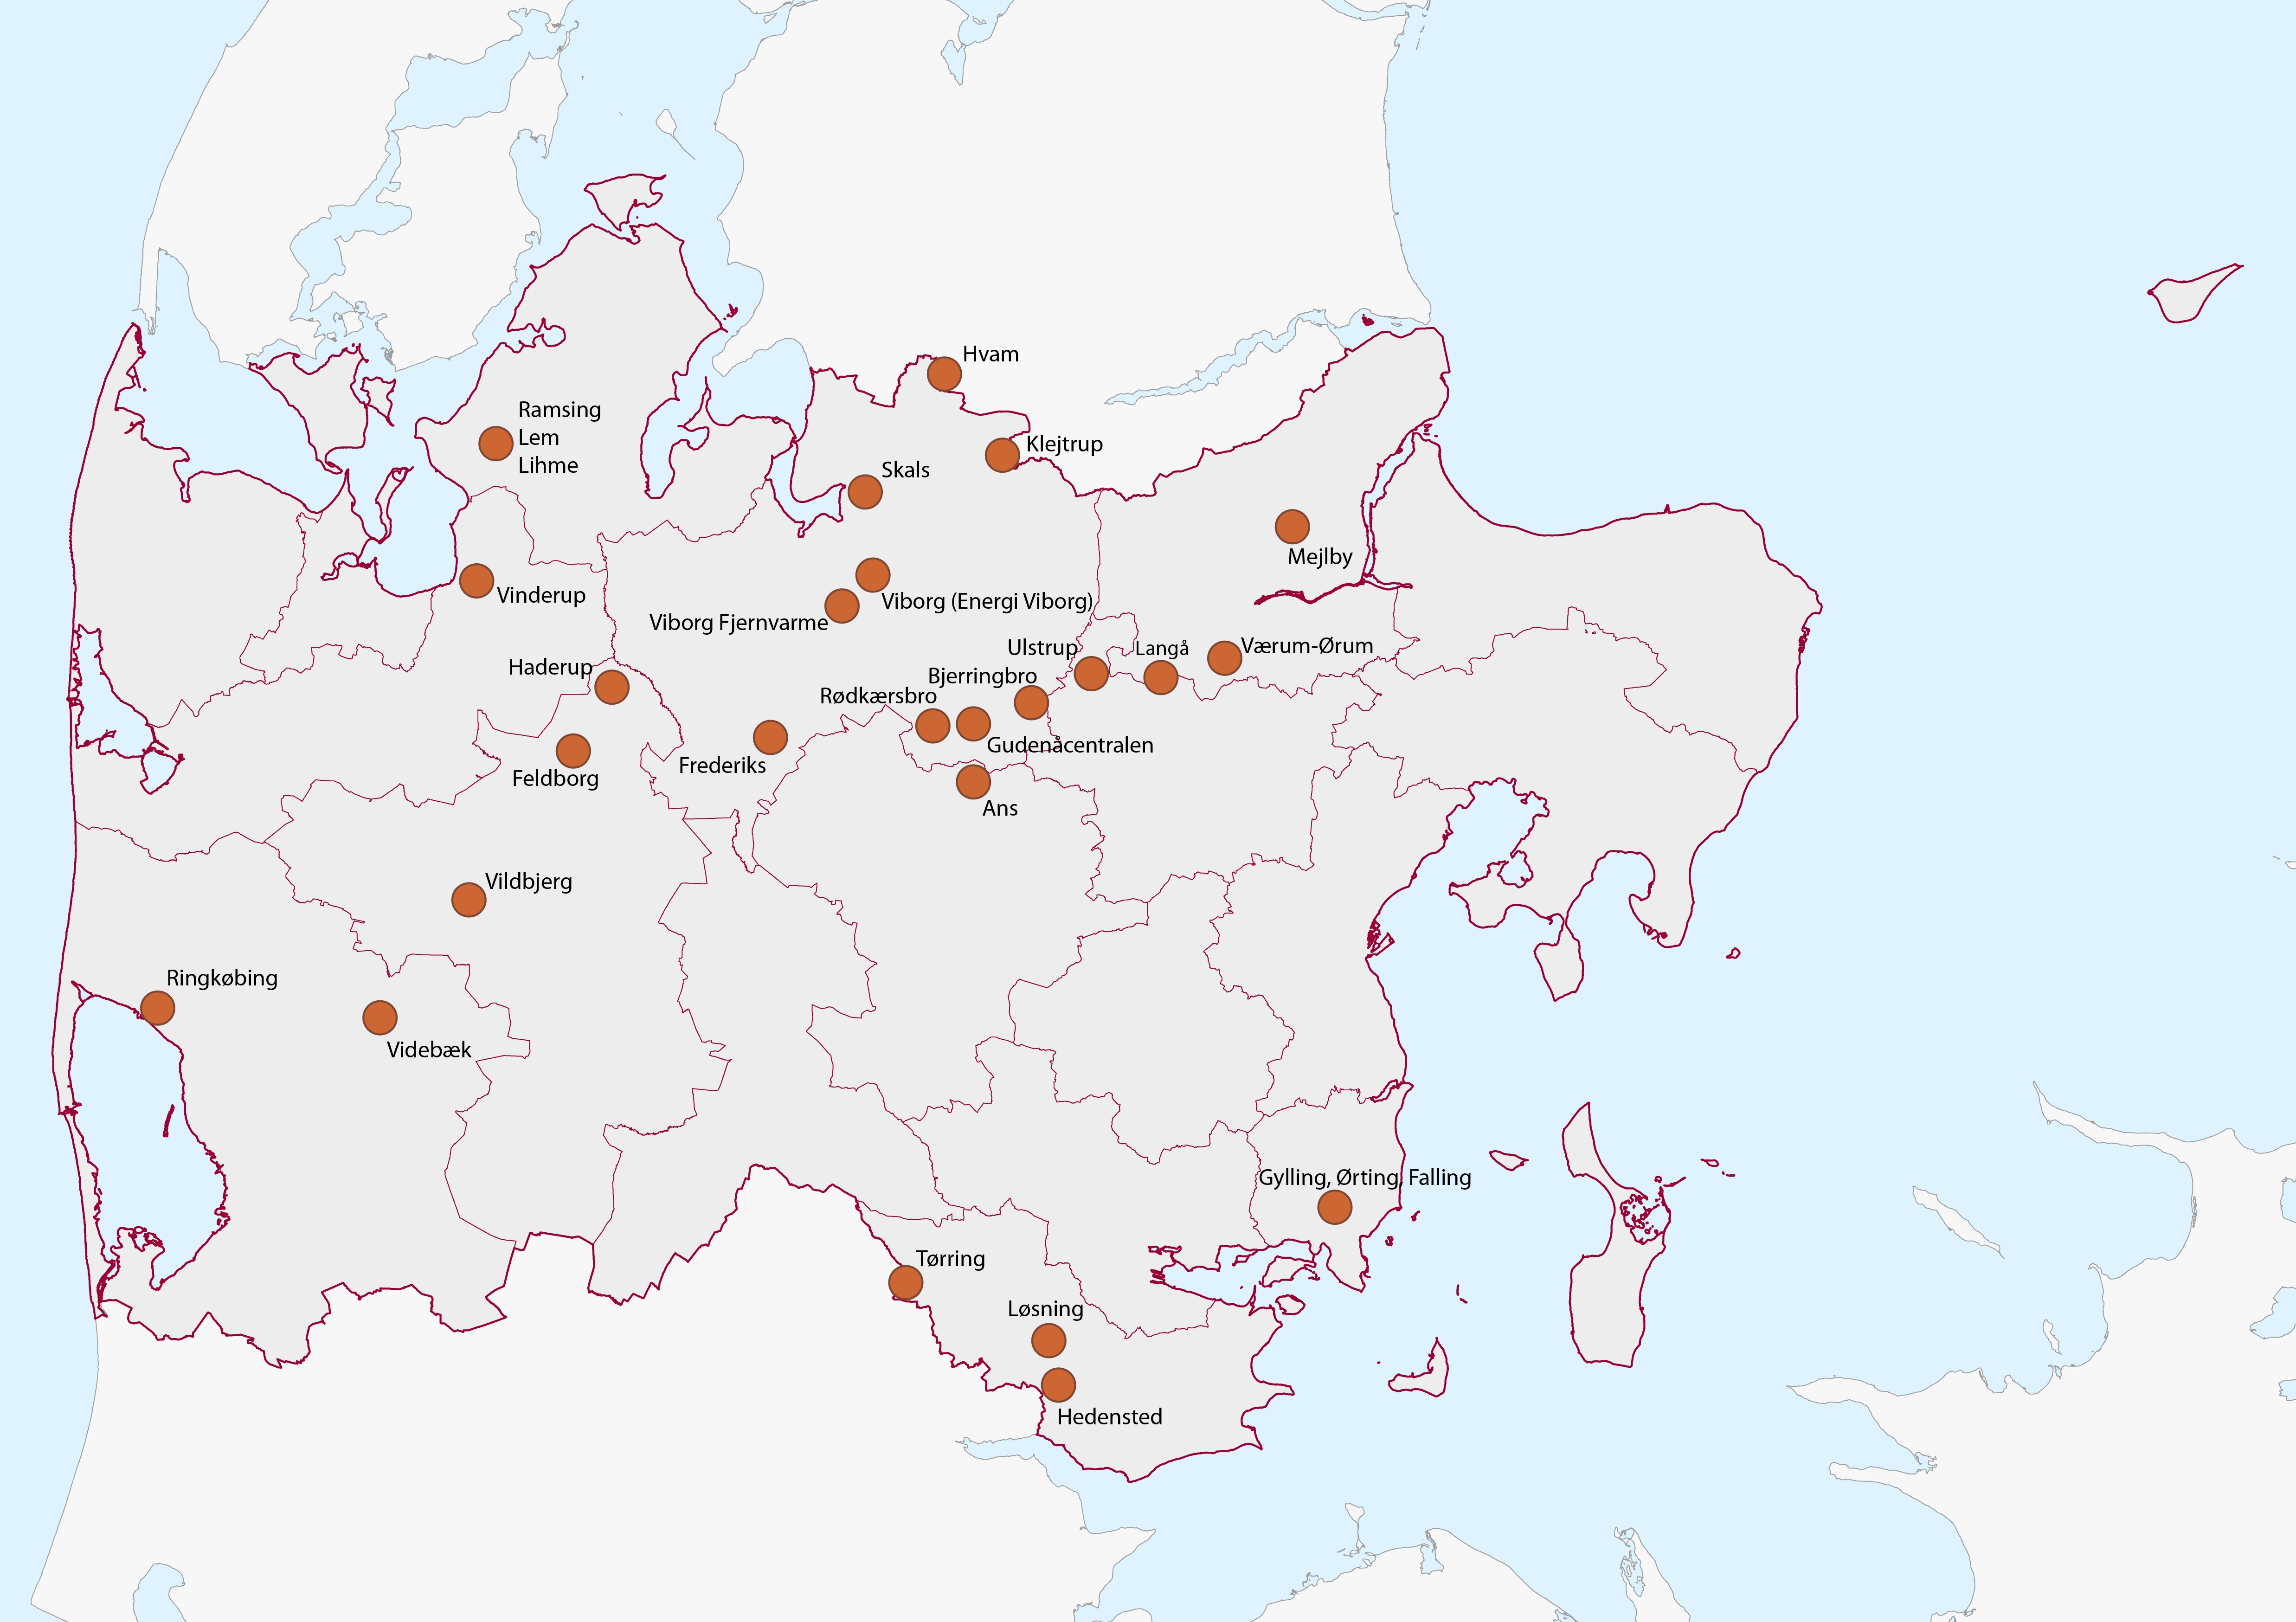 Kort der viser de 24 deltagende selskaber